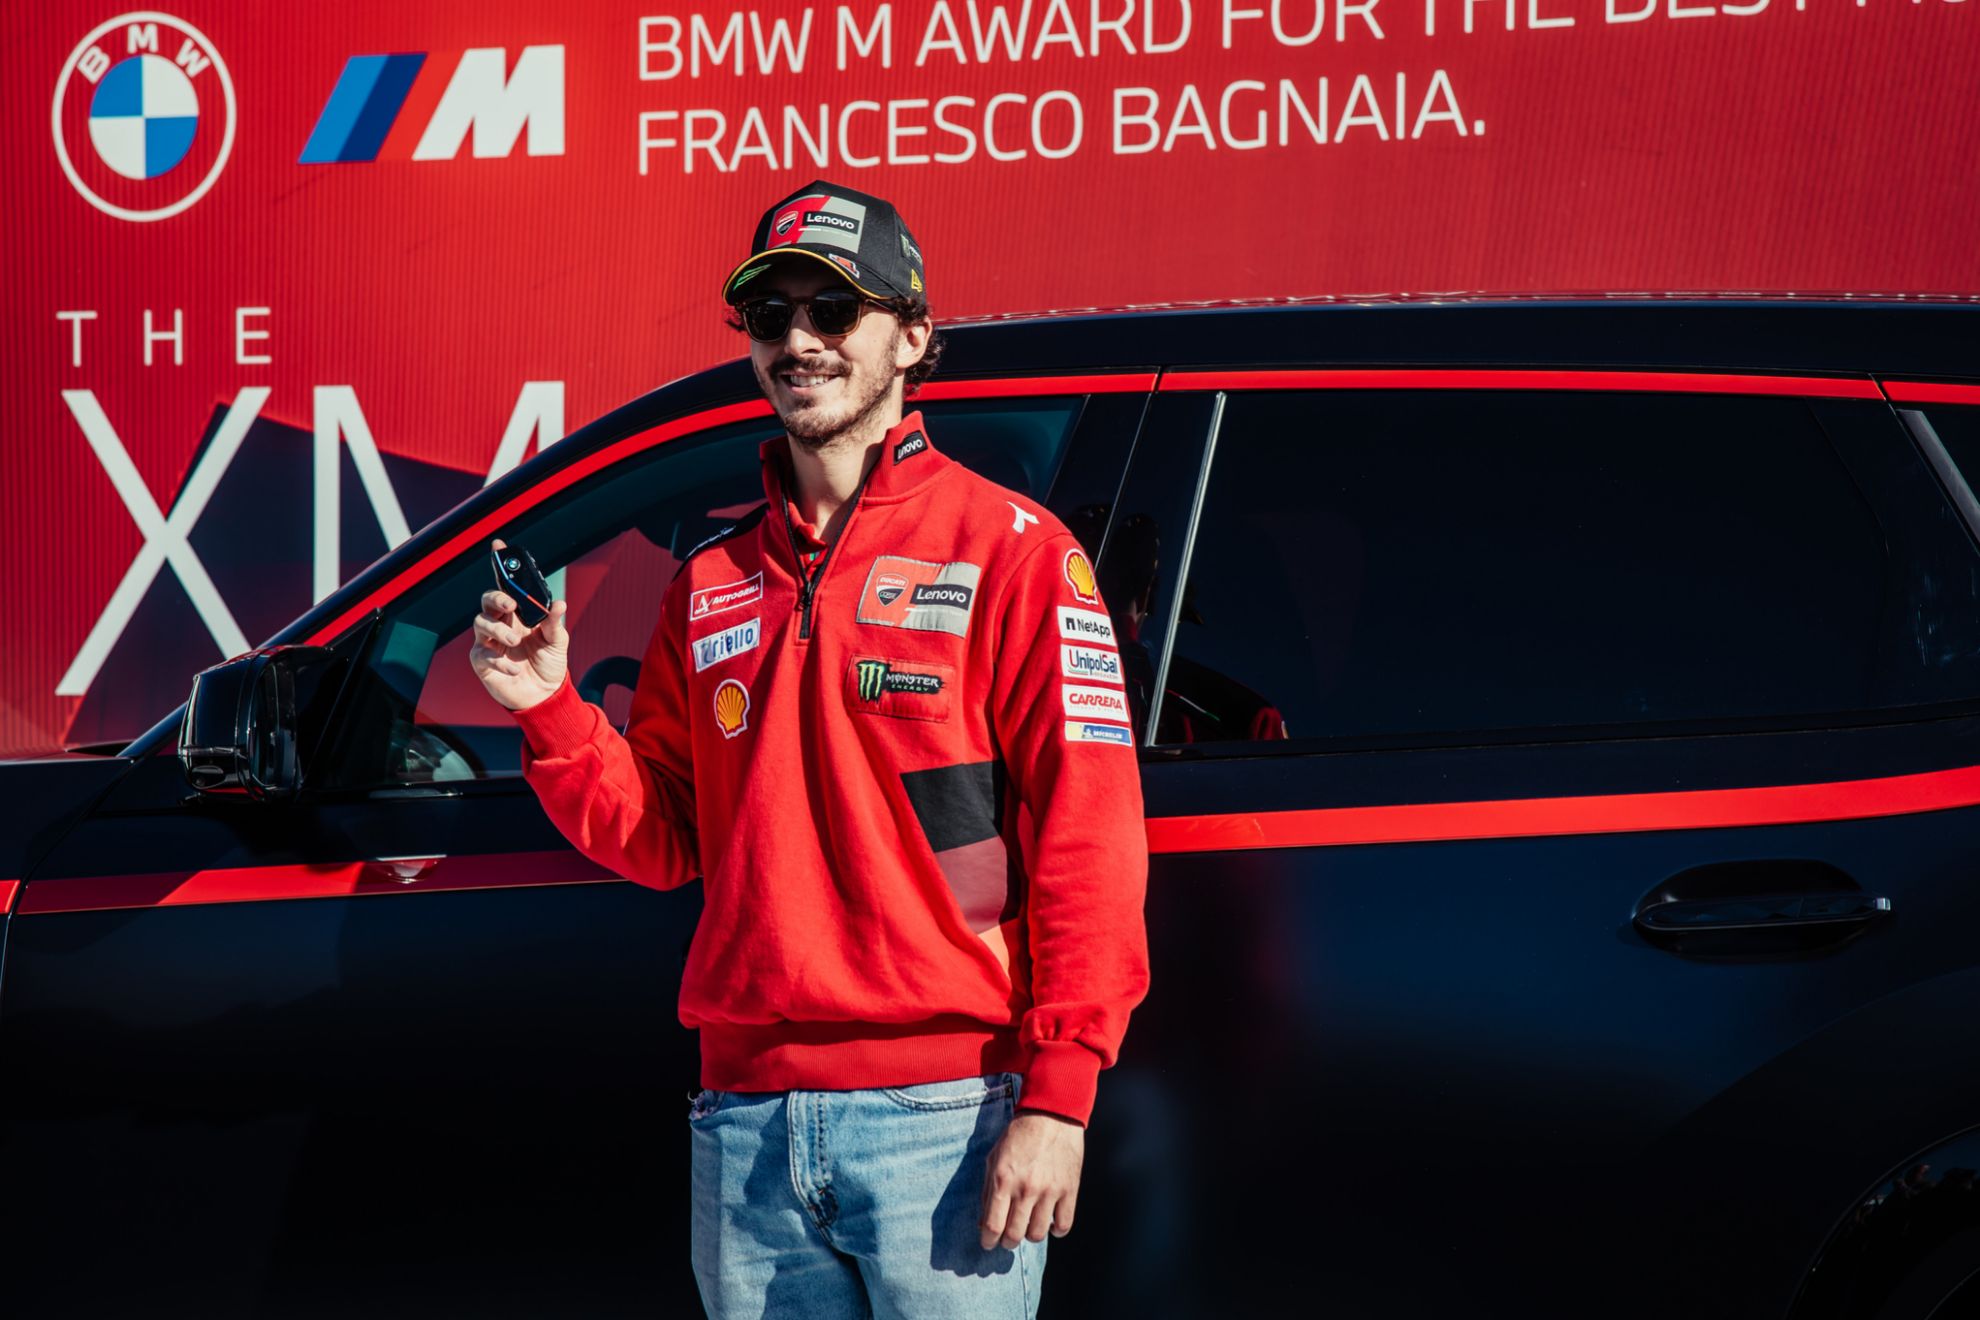 Bagnaia ha ganado con mucha más solvencia el BMW M Award que el Mundial de MotoGP.